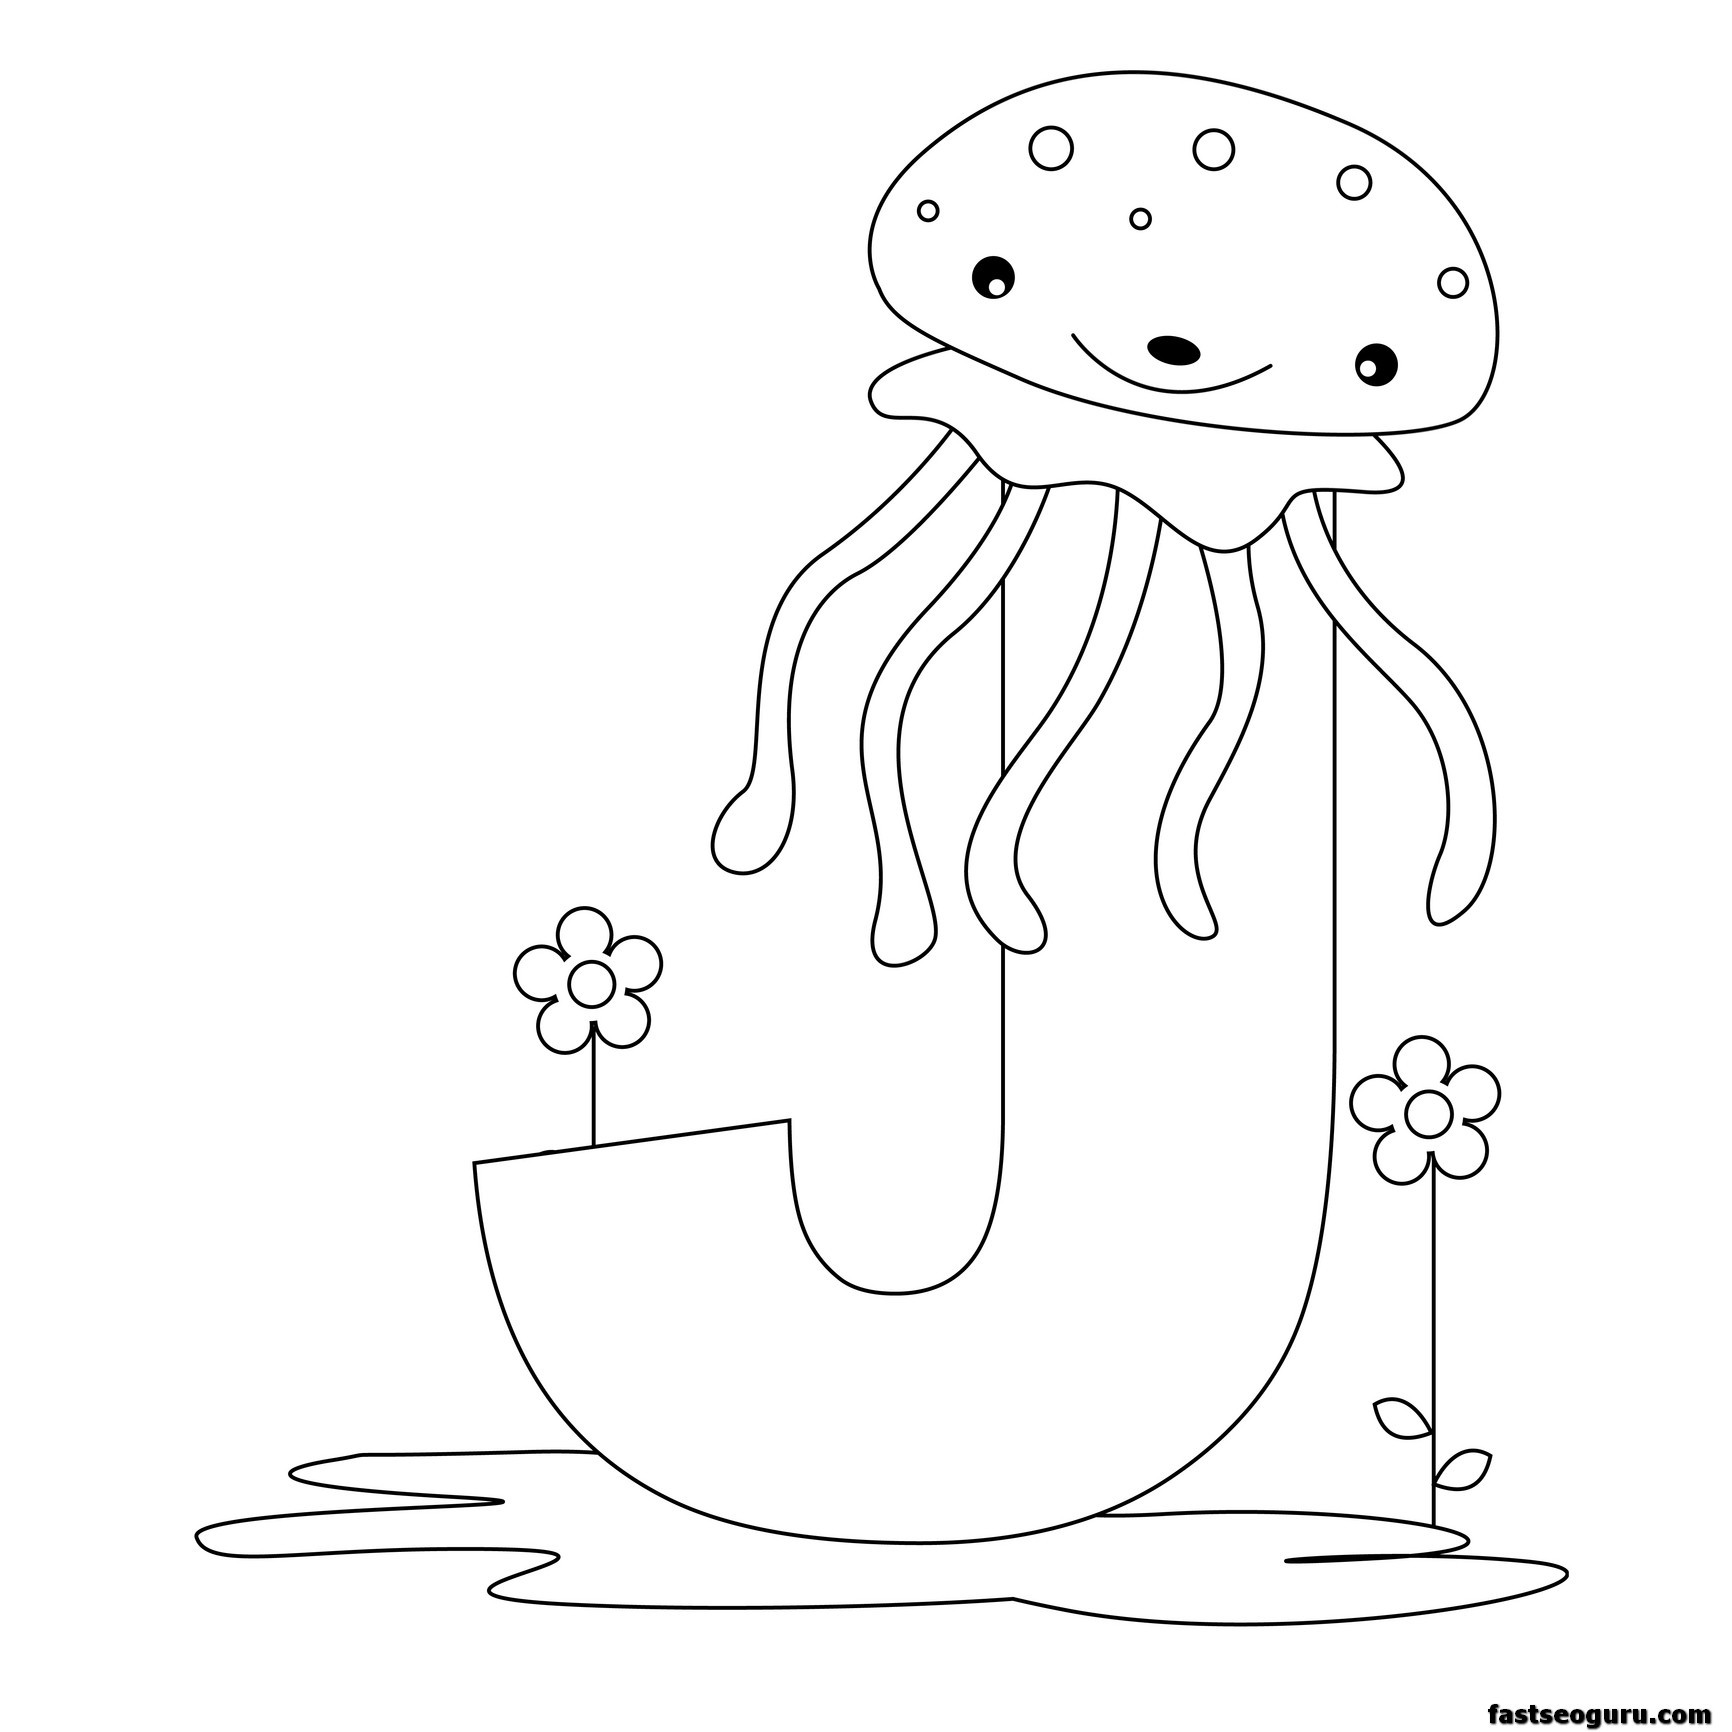 Printable Animal Alphabet worksheets Letter J for Jellyfish